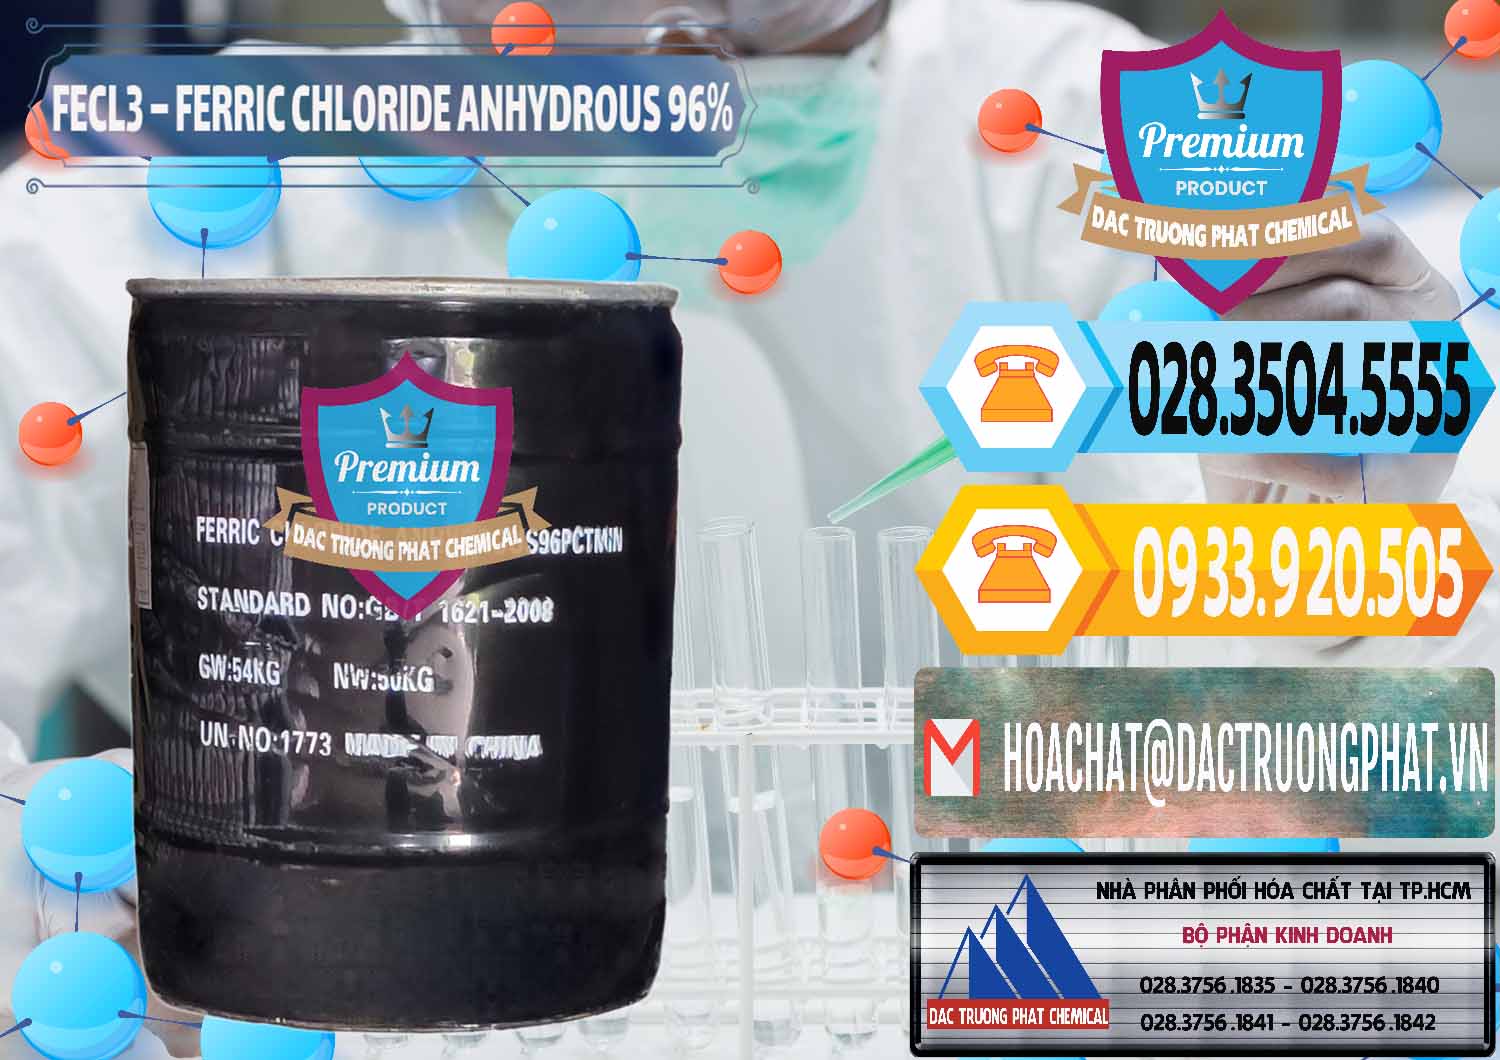 Đơn vị chuyên kinh doanh và bán FECL3 – Ferric Chloride Anhydrous 96% Trung Quốc China - 0065 - Cty chuyên bán ( phân phối ) hóa chất tại TP.HCM - hoachattayrua.net